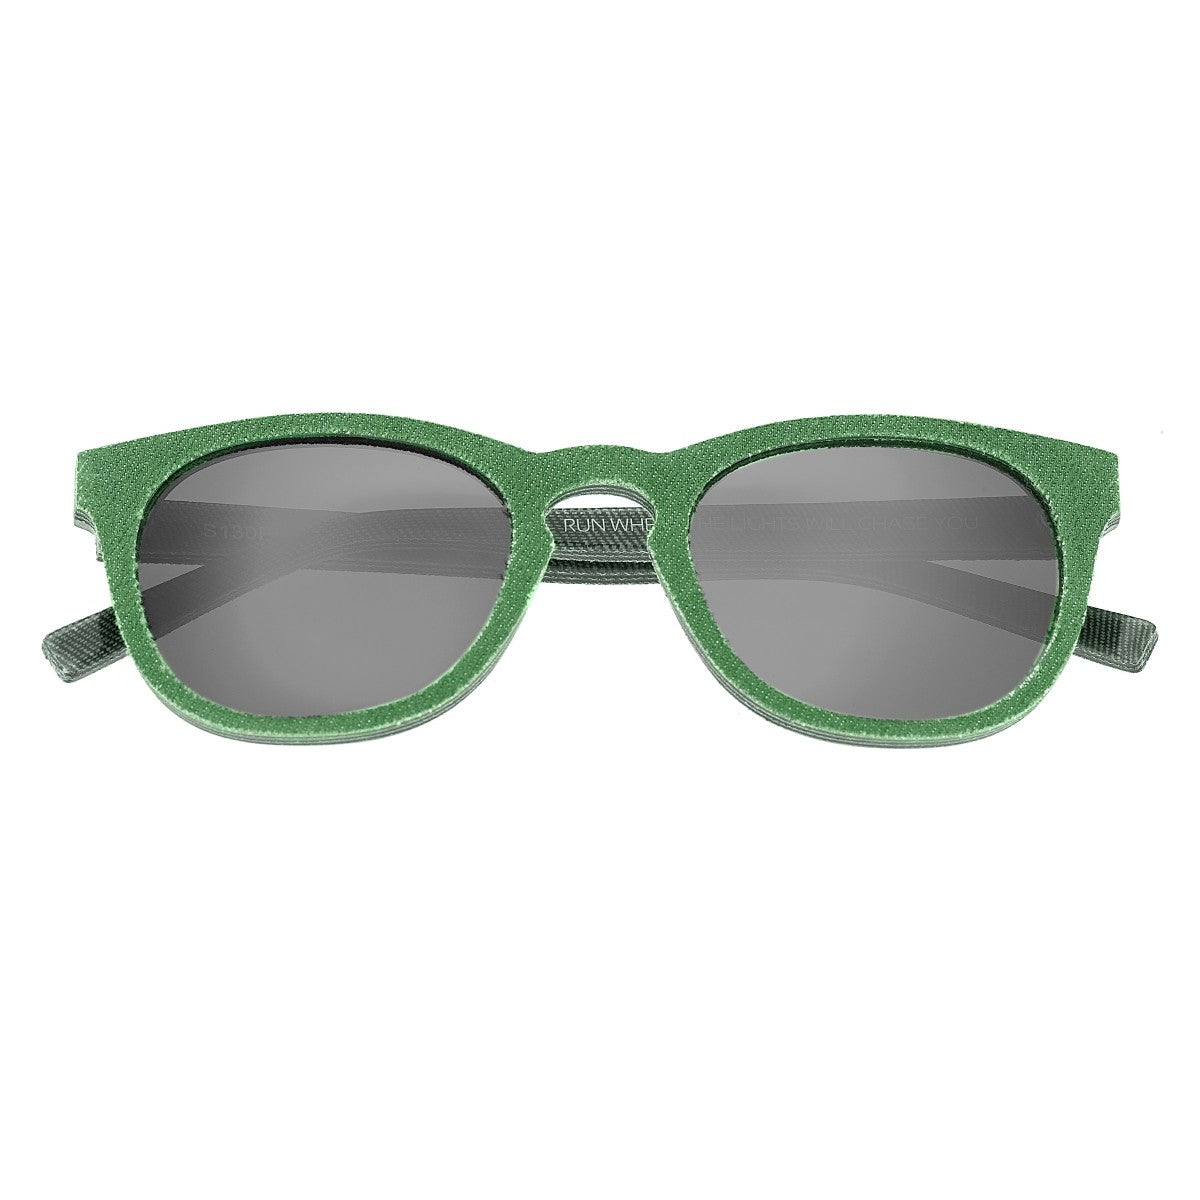 Spectrum North Shore Denim Polarized Sunglasses - Green - SSGS130GN